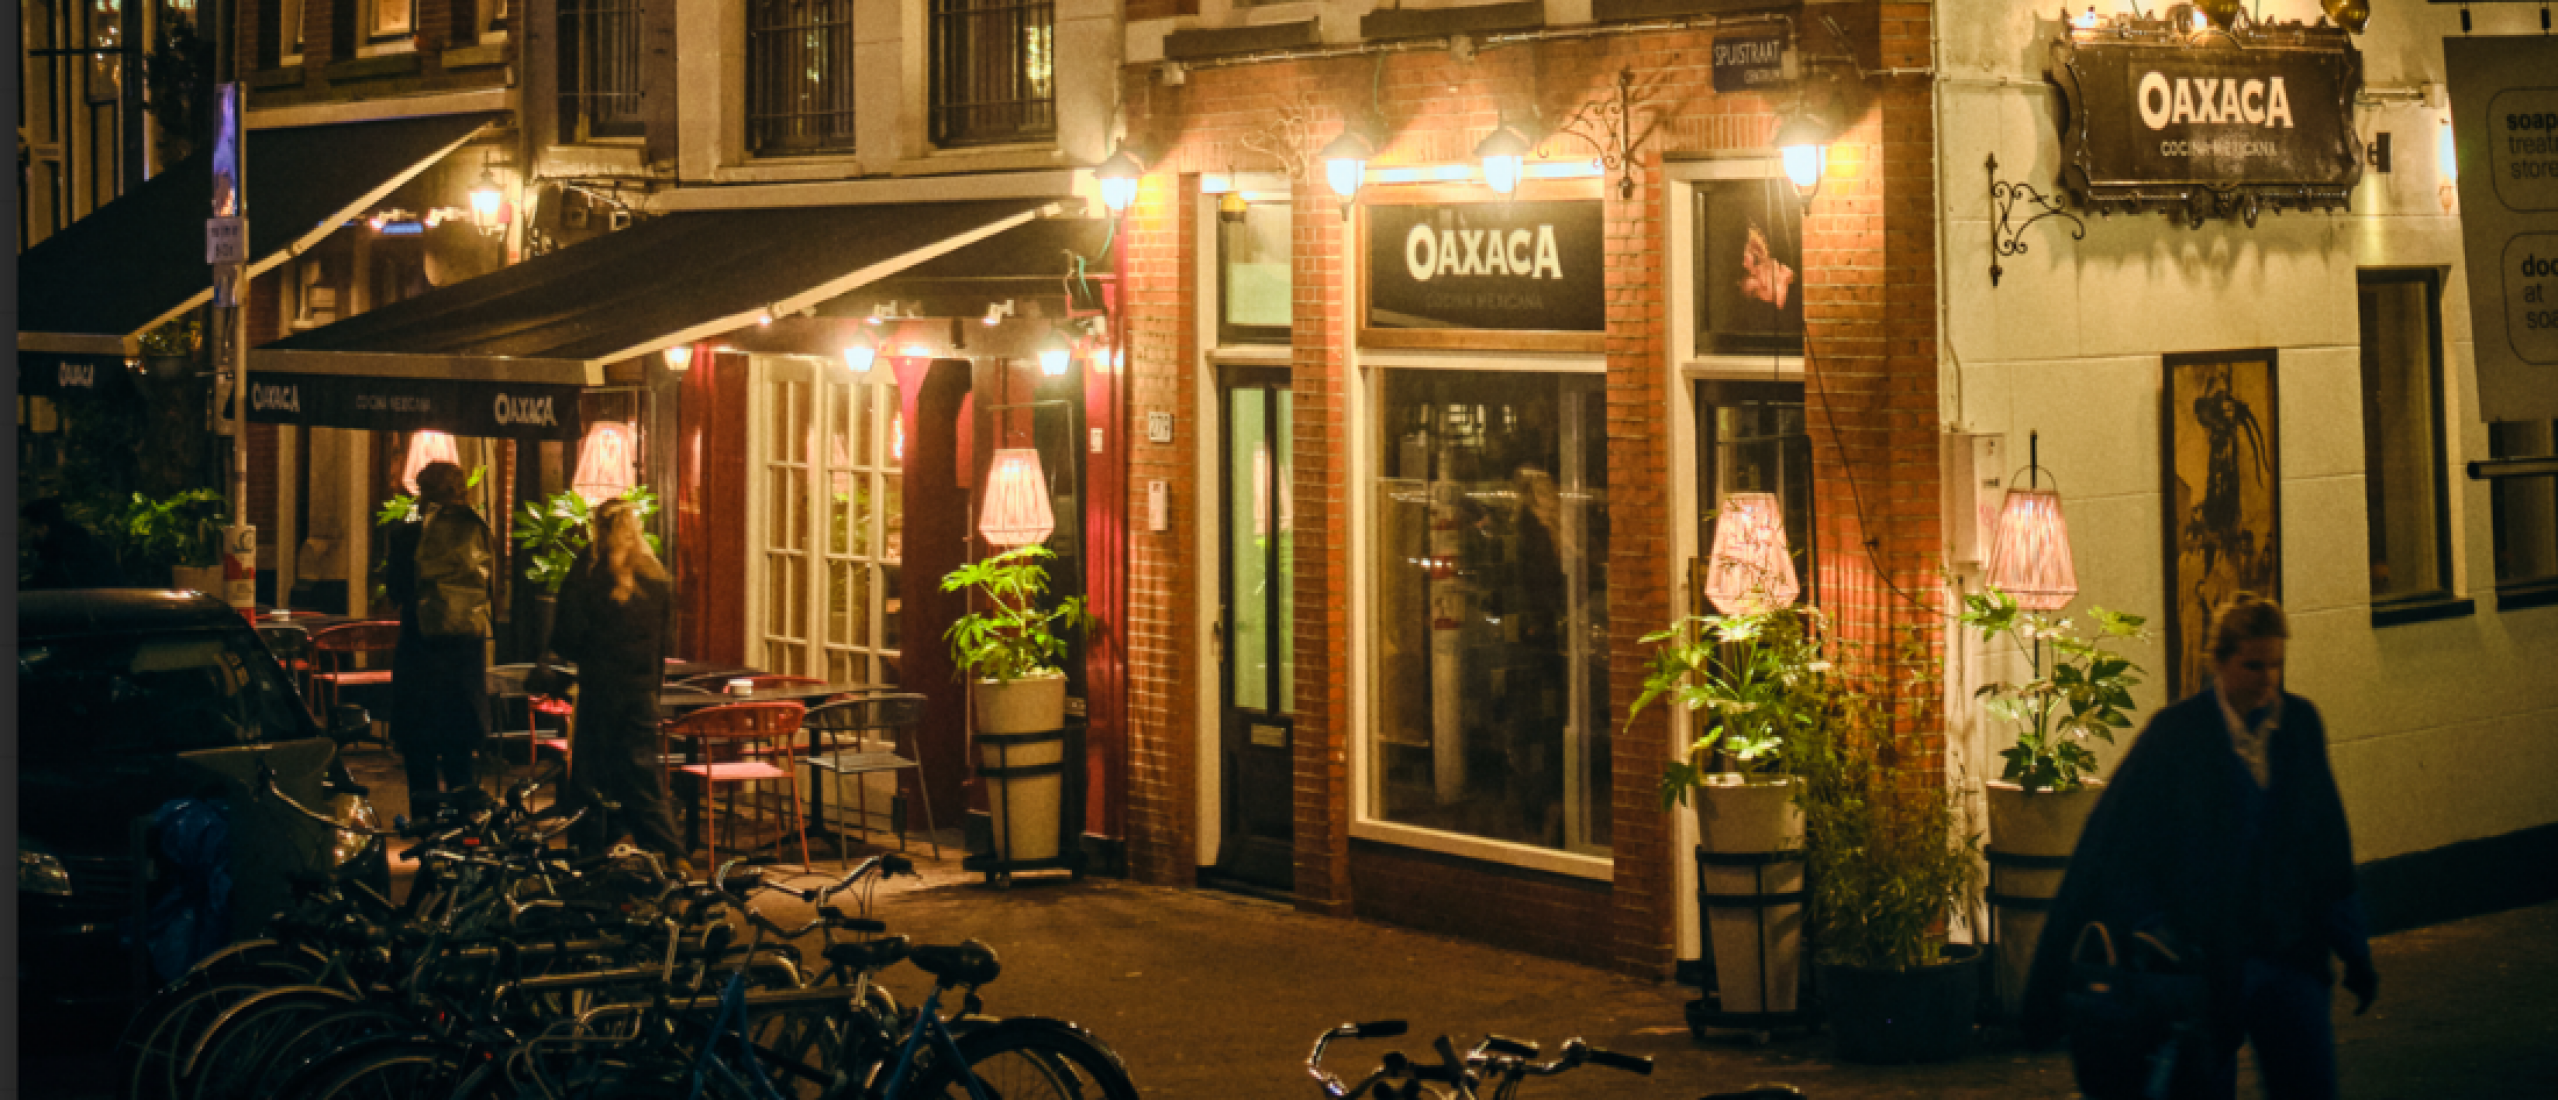 Oaxaca brengt authentieke Mexicaanse keuken en smaken naar Amsterdam